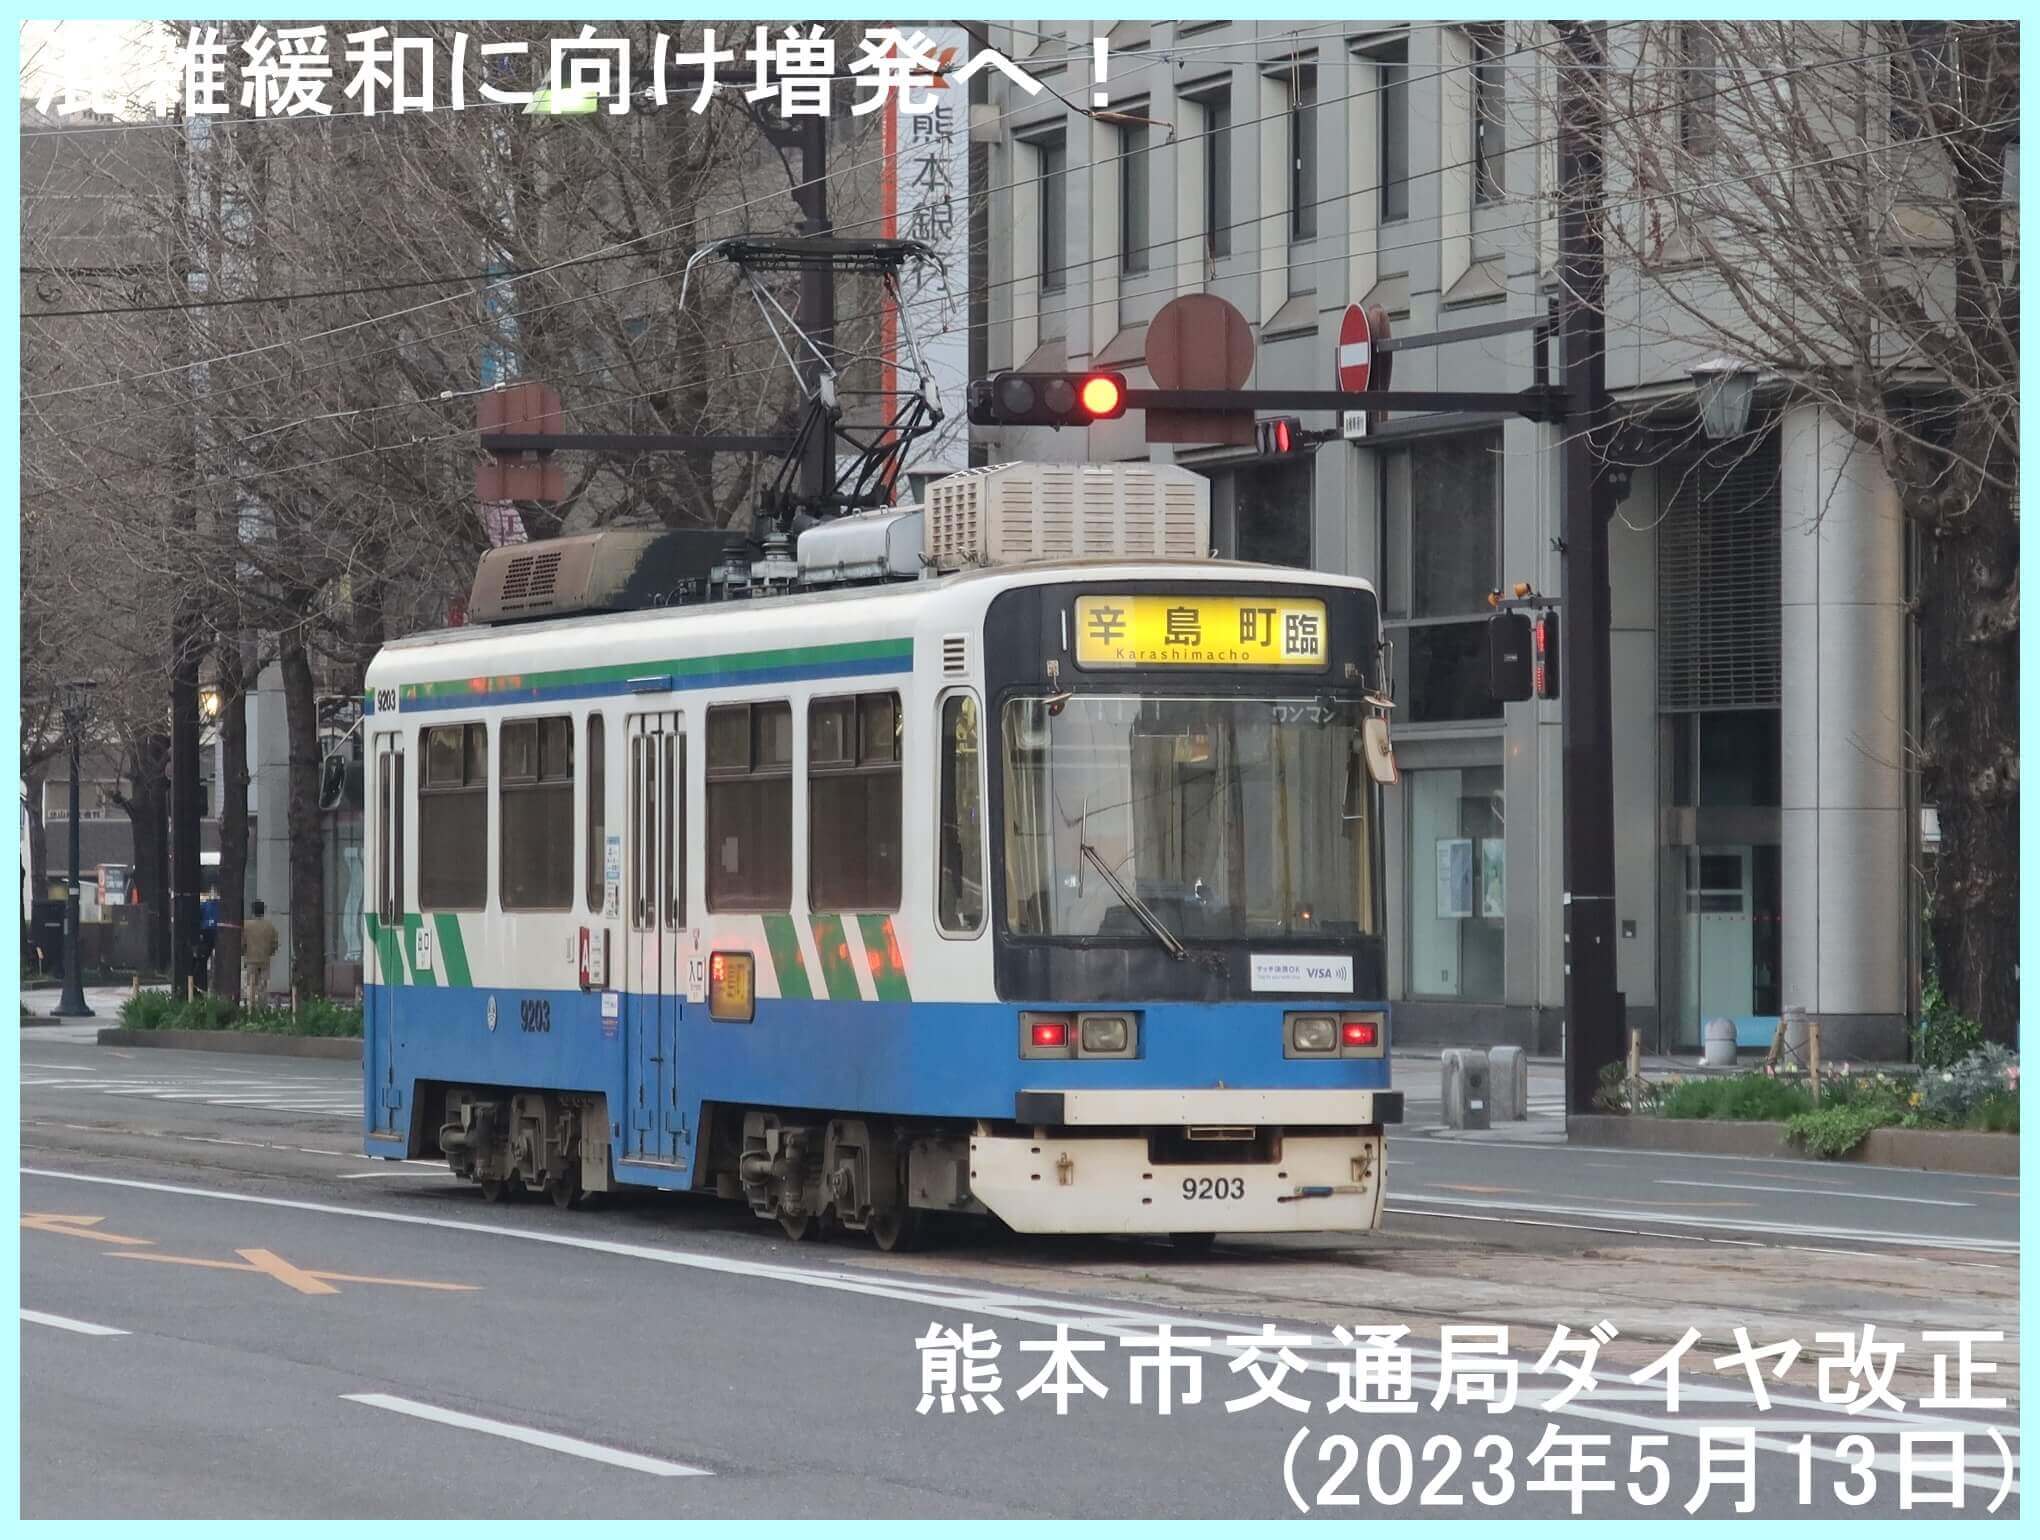 混雑緩和に向け増発へ！　熊本市交通局ダイヤ改正(2023年5月13日)